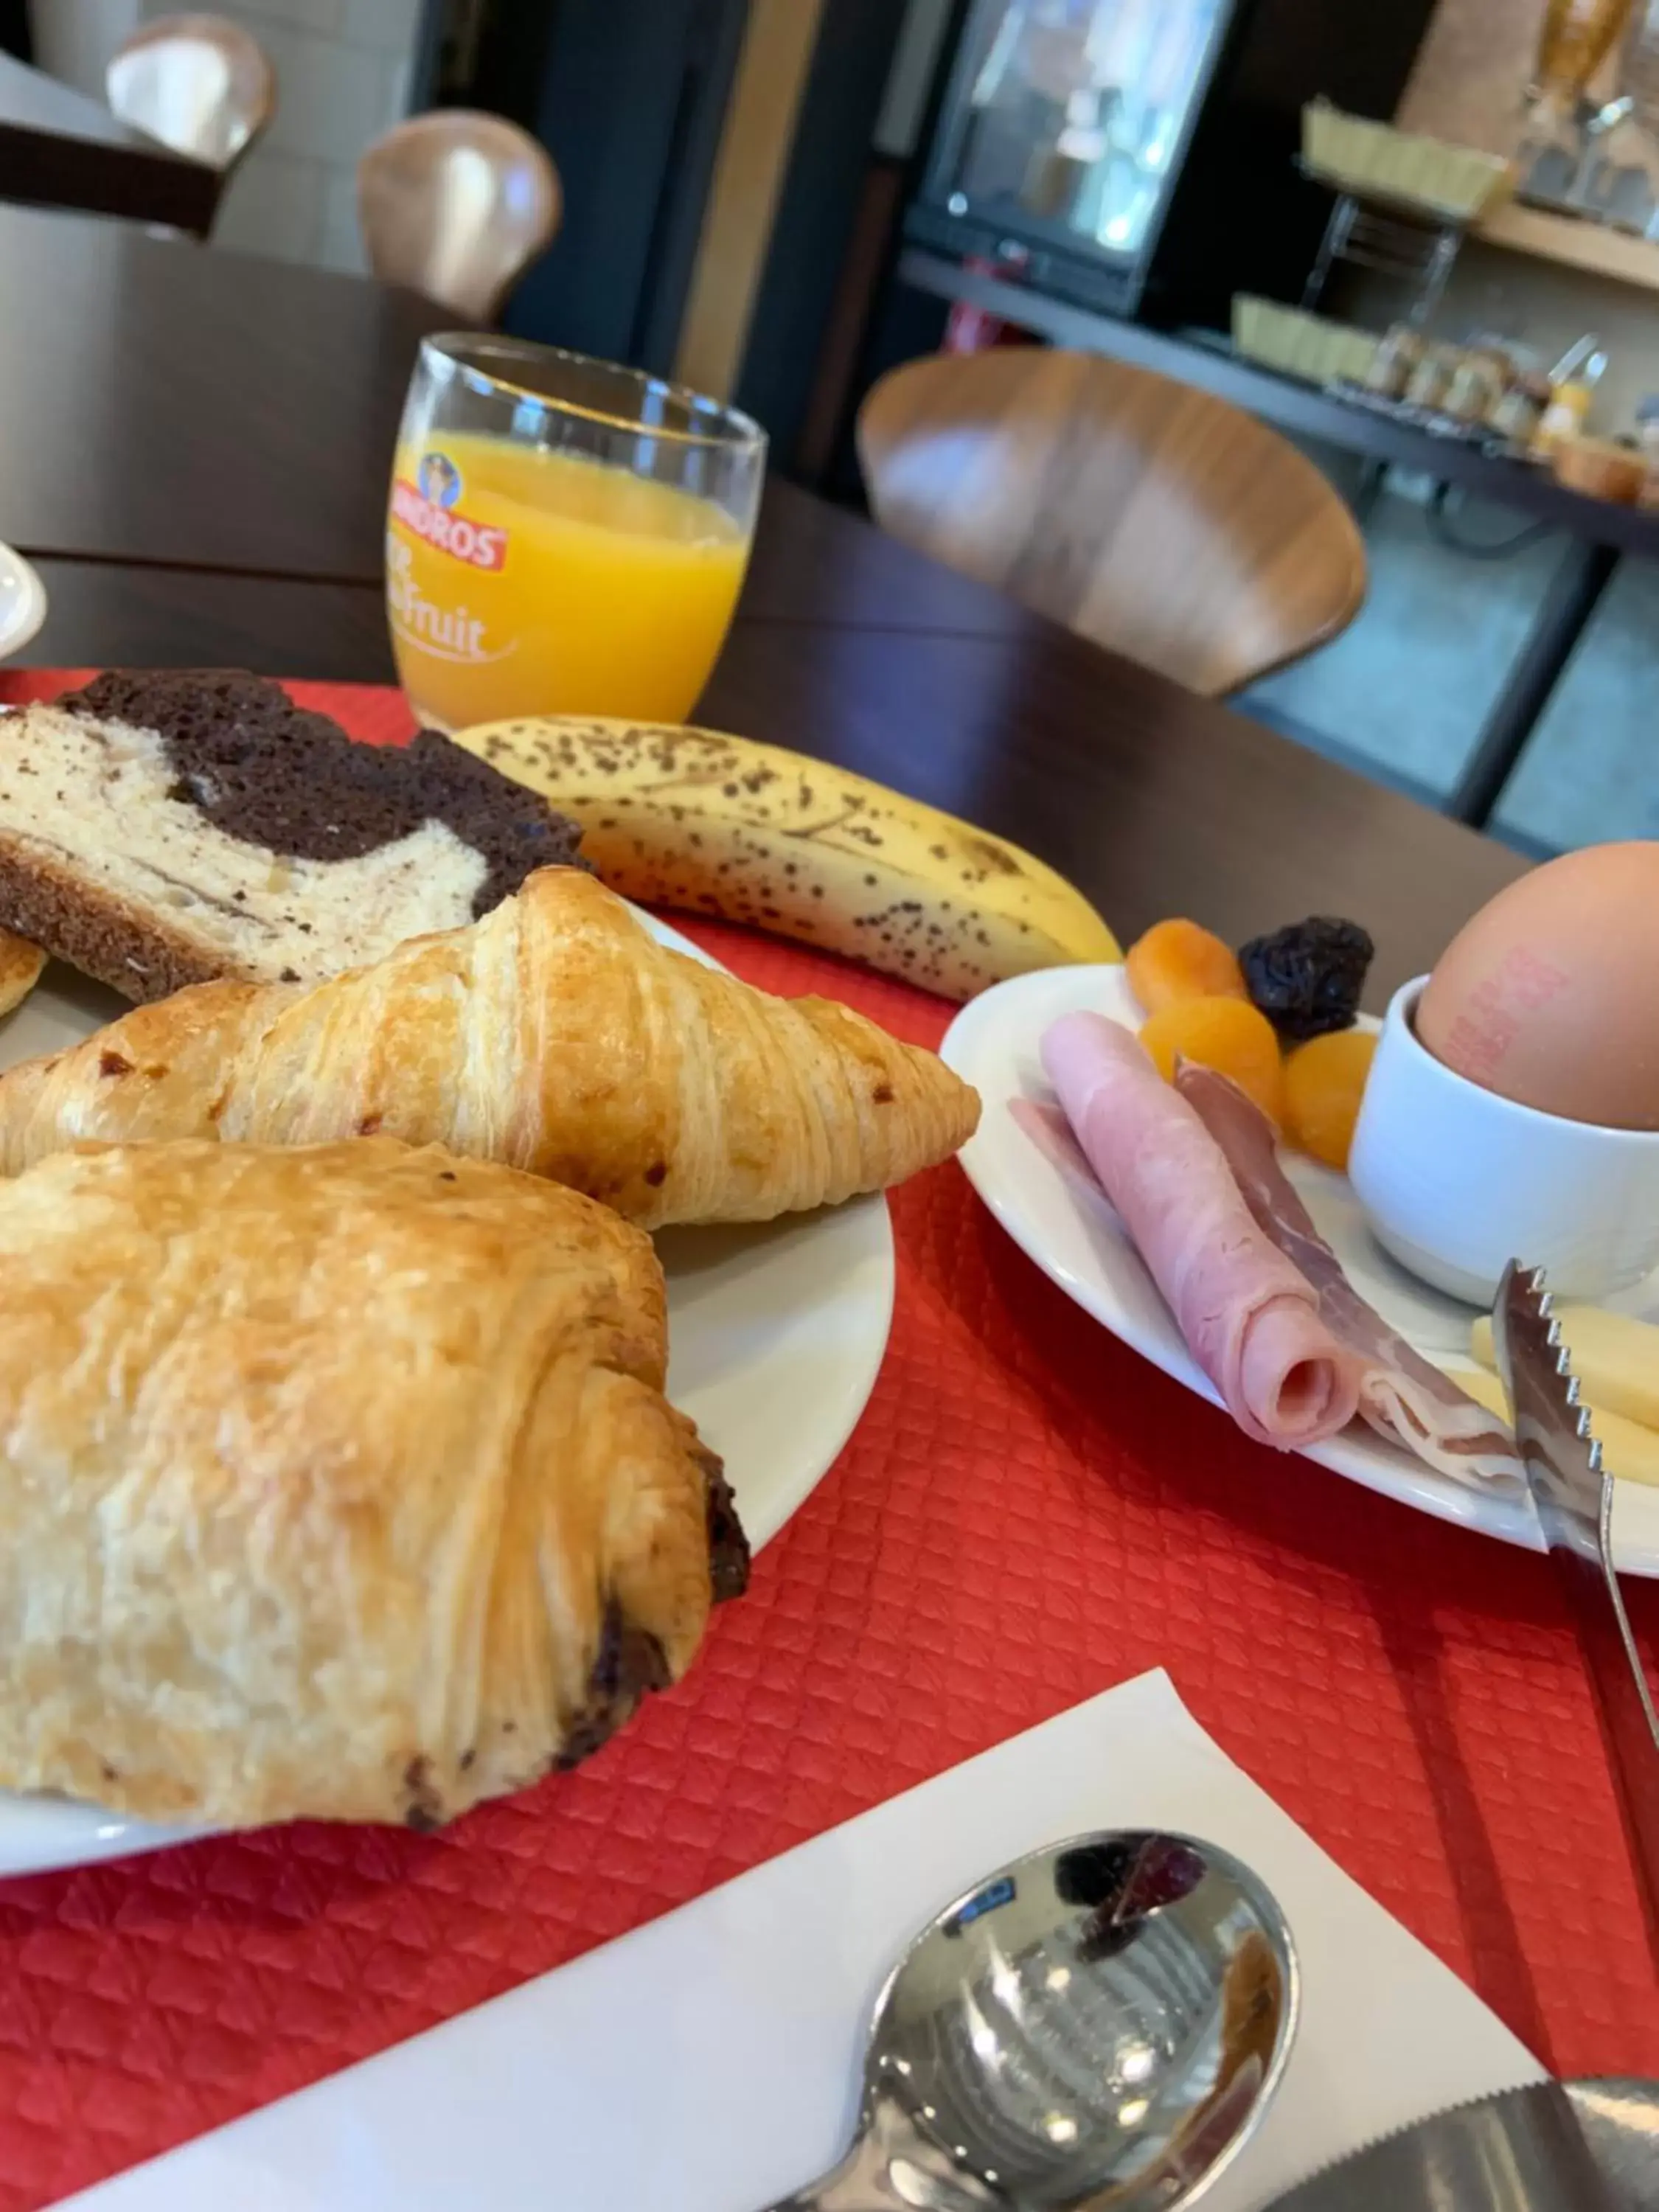 Breakfast in Hôtel de Champagne